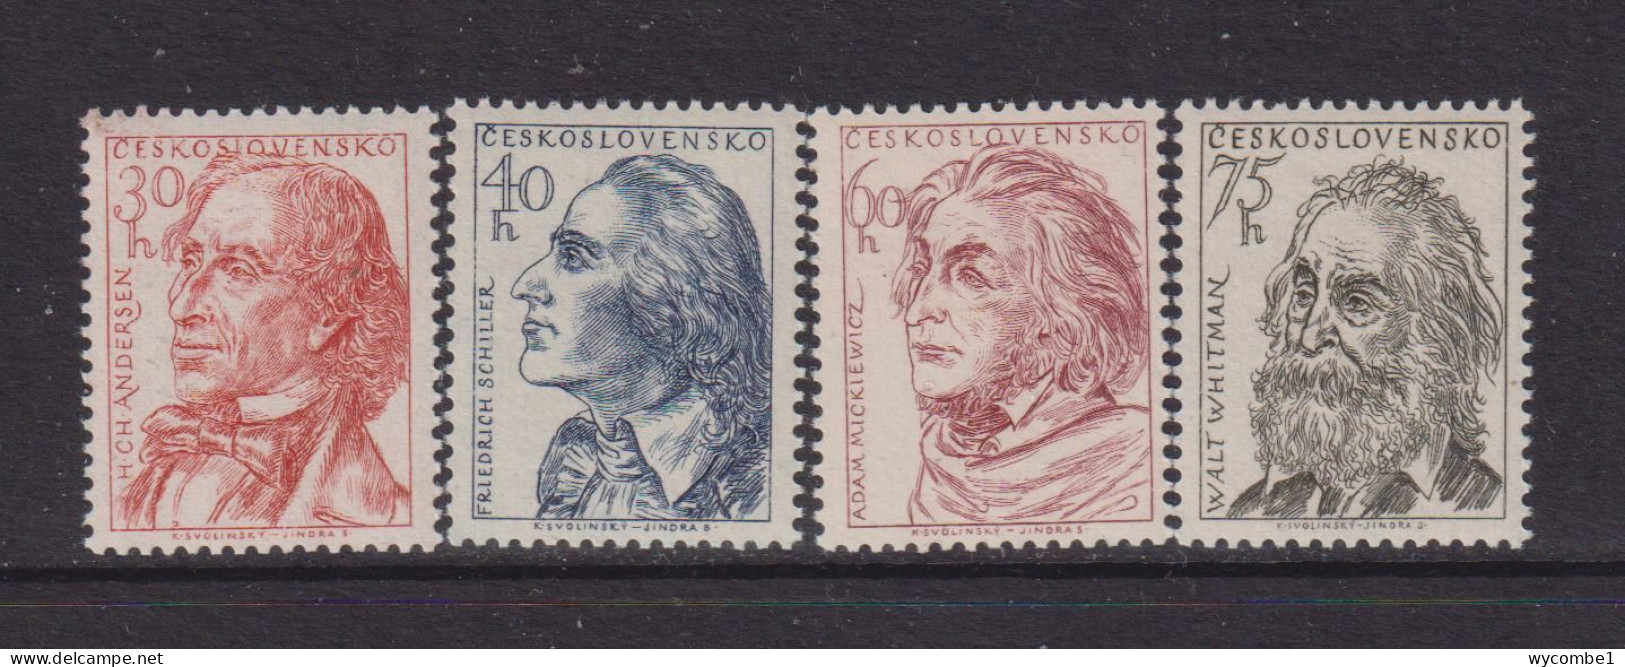 CZECHOSLOVAKIA  - 1955  Writers Set  Never Hinged Mint - Unused Stamps